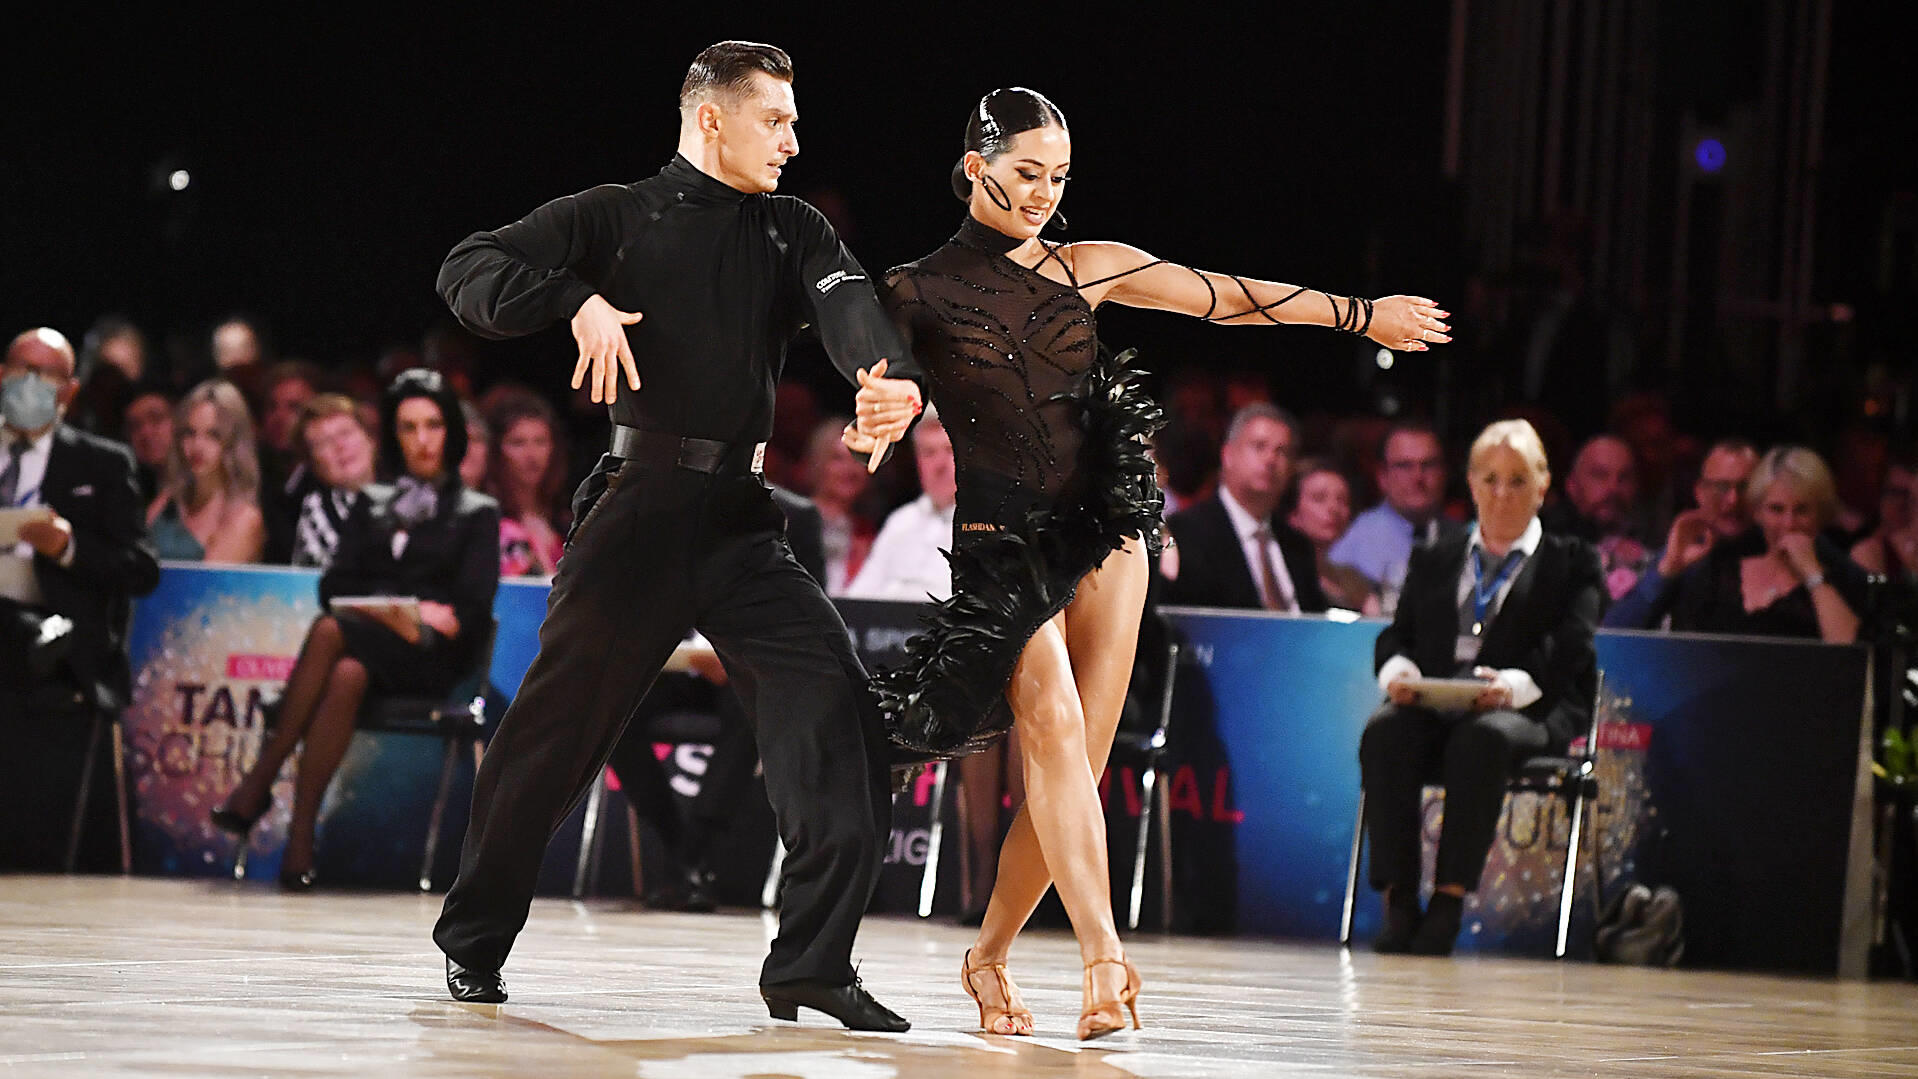 Mit ihrer Leistung bei der Tanz-Weltmeisterschaft "Latein und Showdance Standard" 2022 in Leipzig können Zsolt und Malika mit ihrer Kür überzeugen.